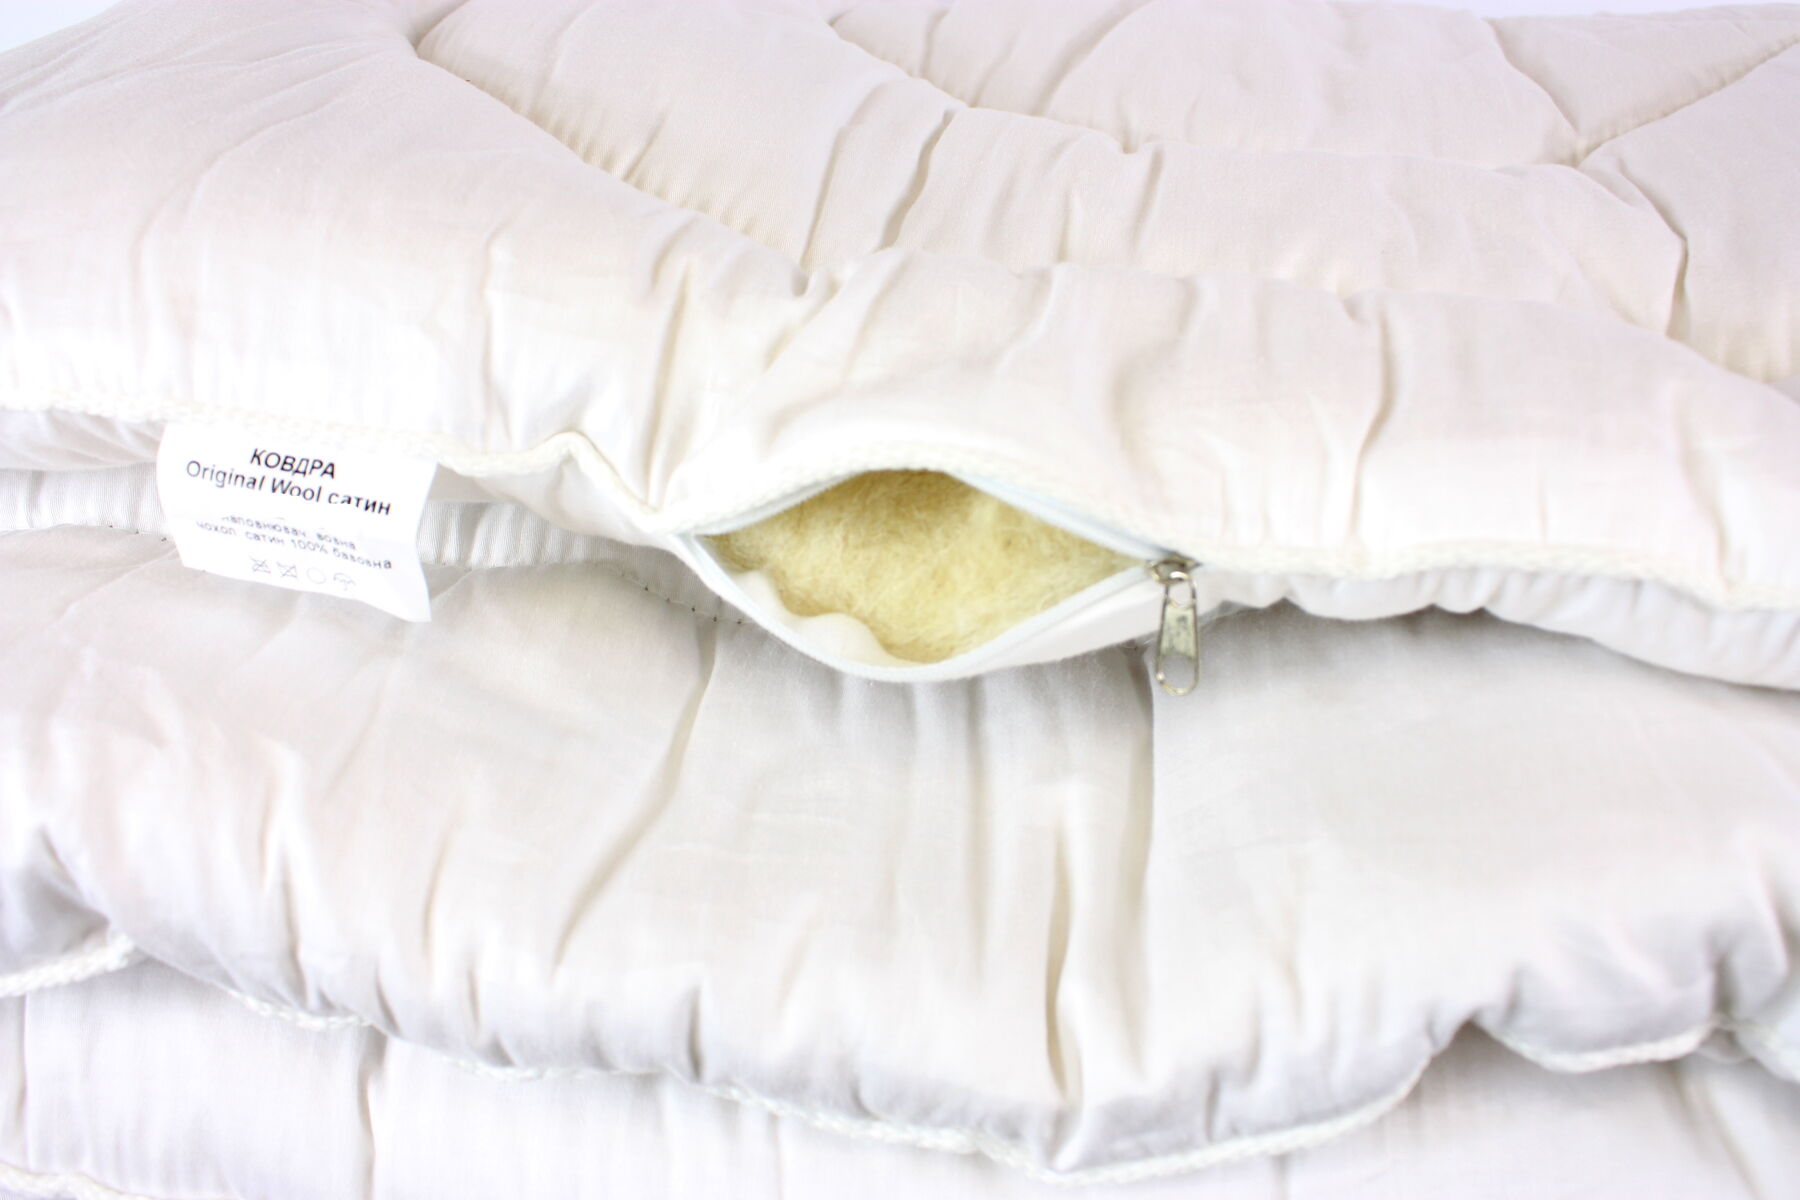 Одеяло шерстяное евро LightHouse Original Wool сатин 195*215 - купить